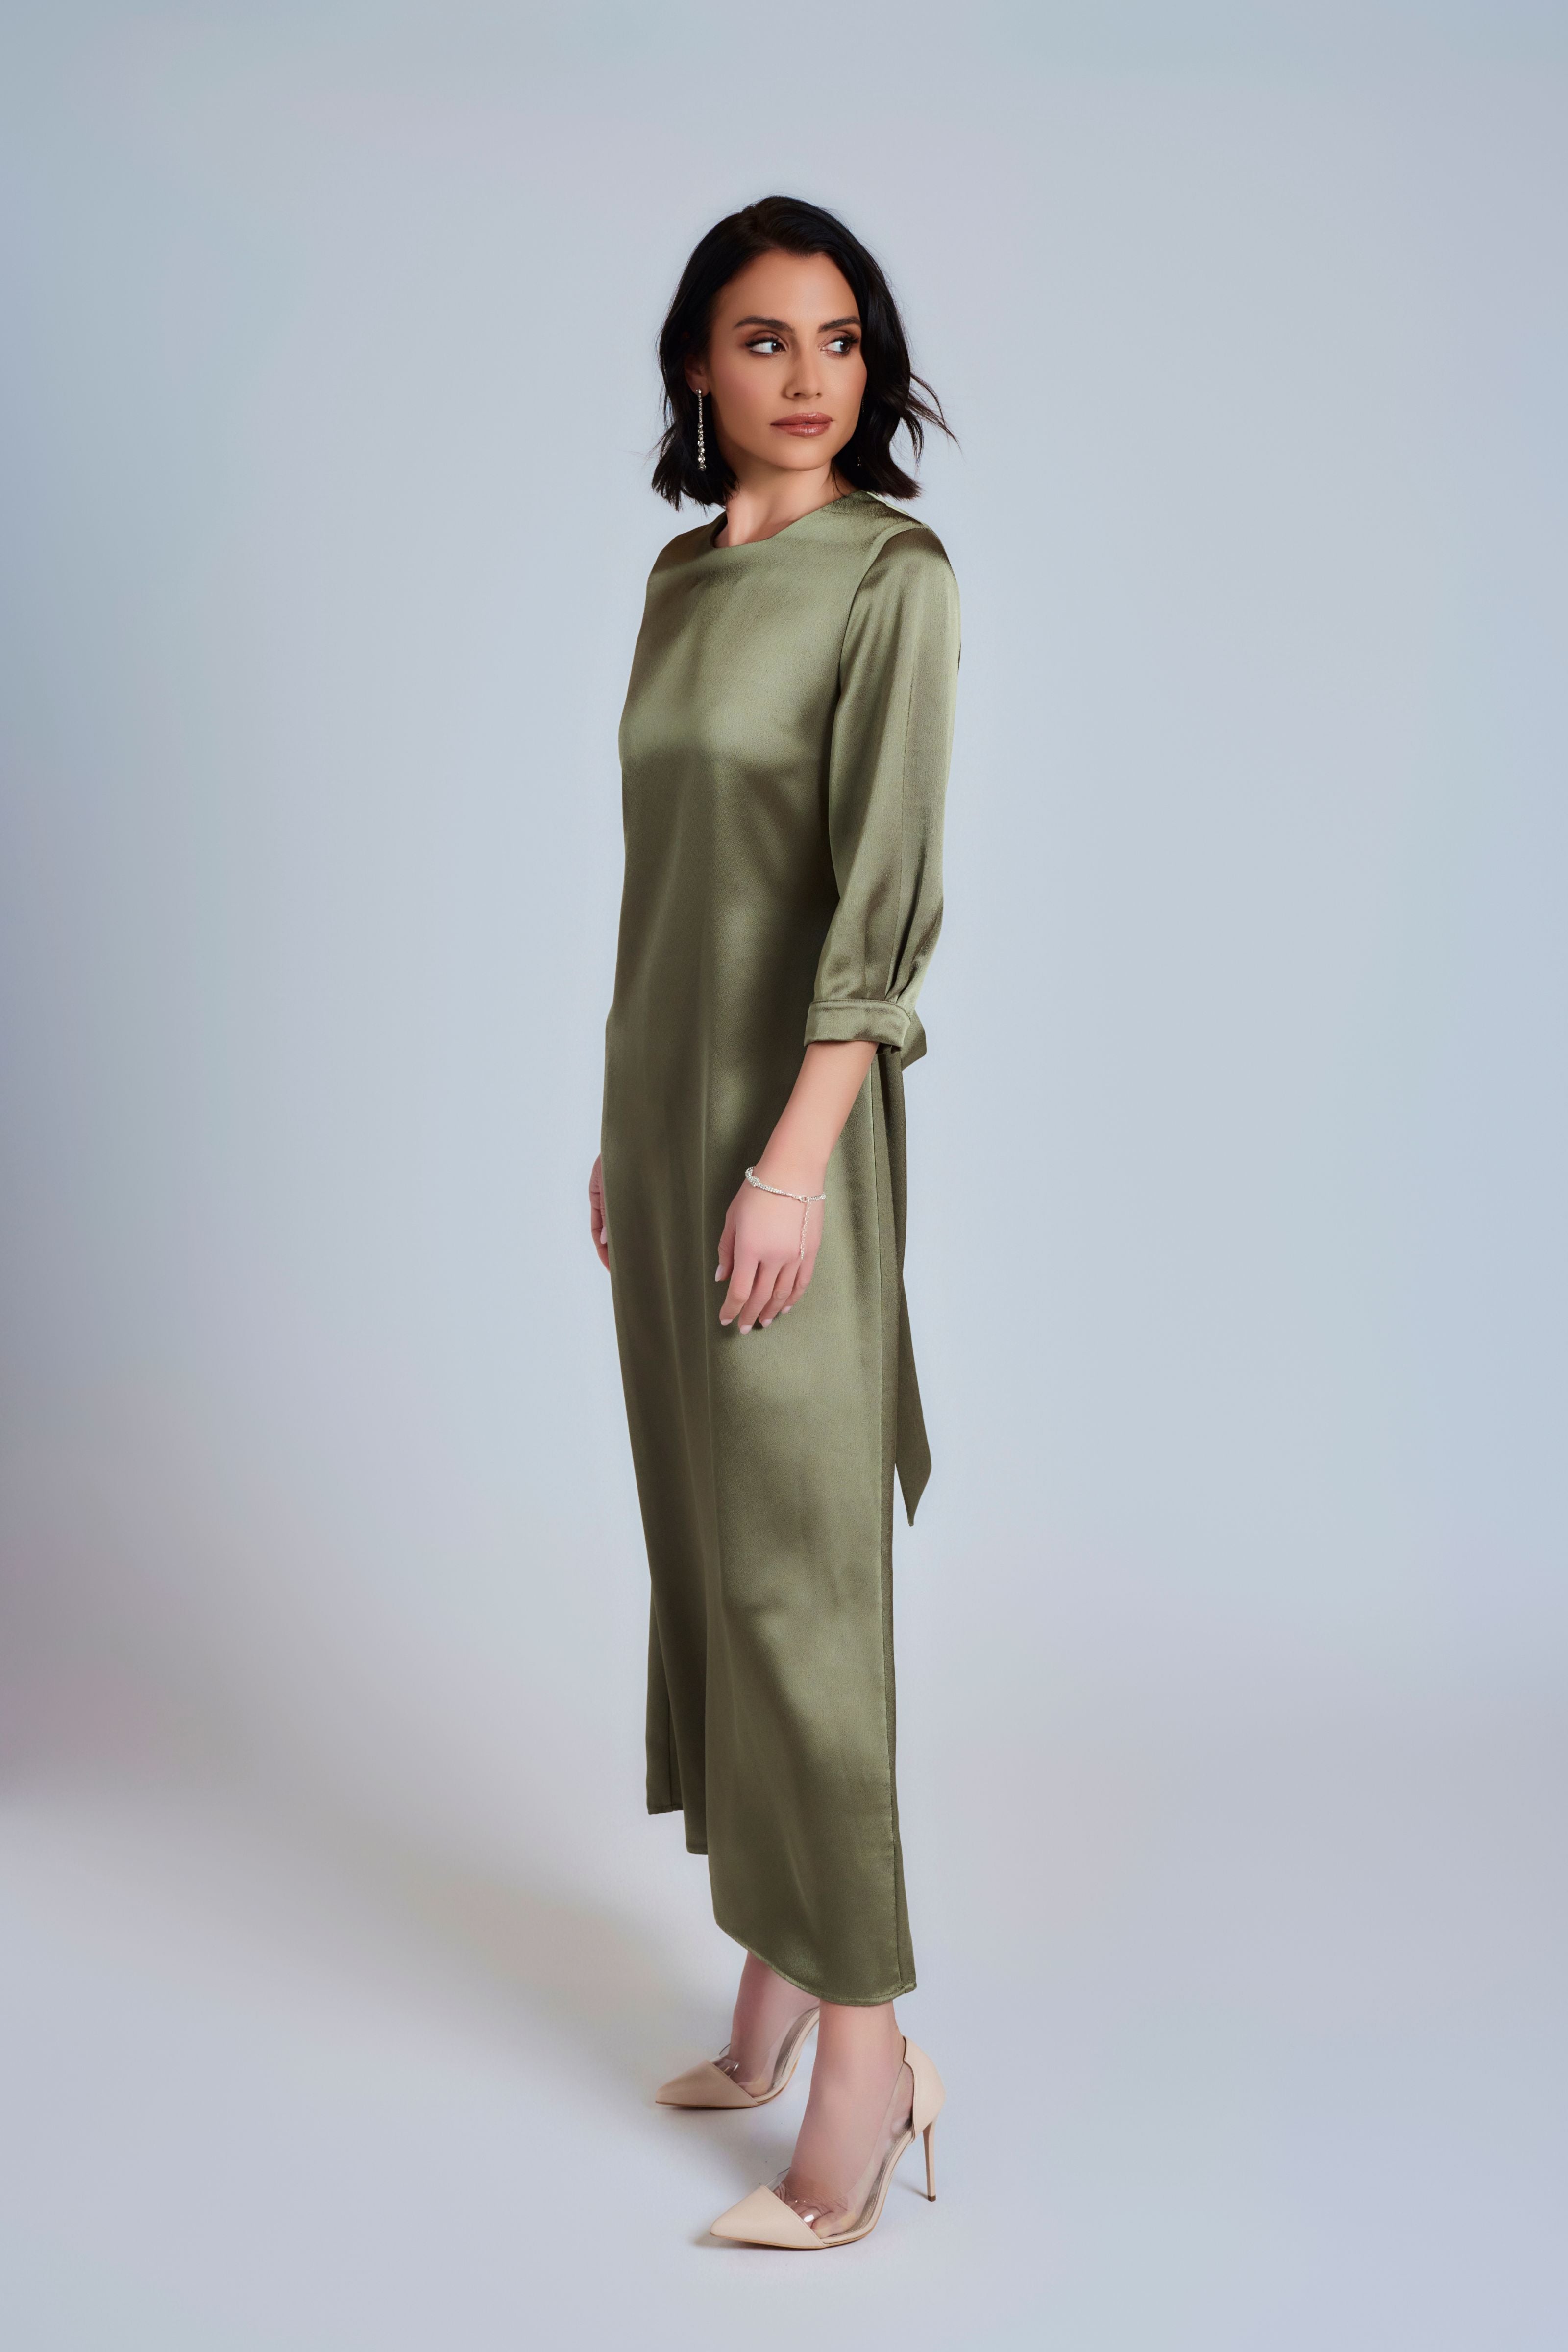 Kate Satin Evening Dress - Deep Green - Olivvi World